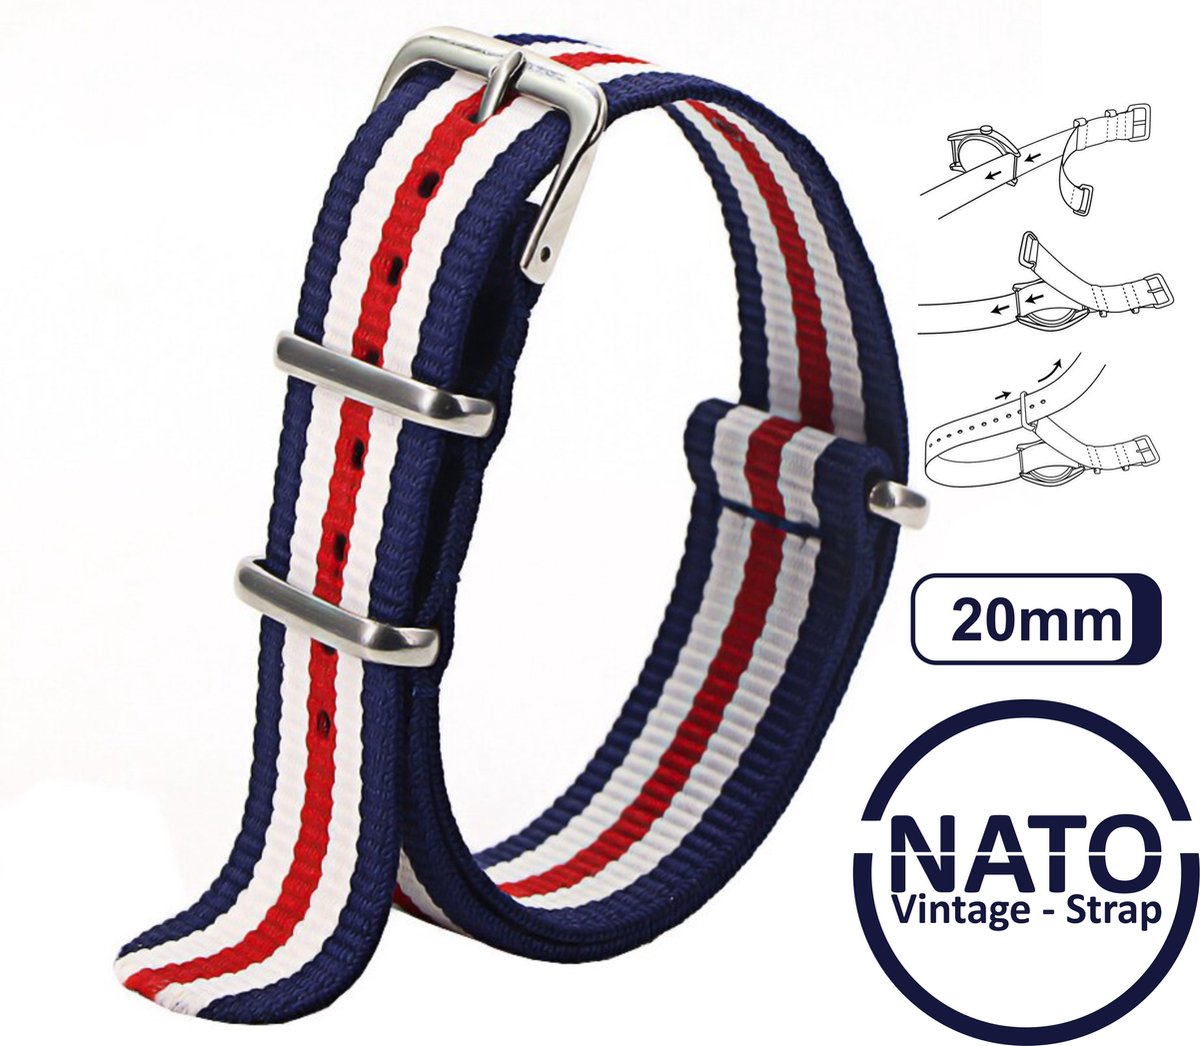 20mm Nato Strap Rood Wit Blauw streep - Vintage James Bond - Nato Strap collectie - Mannen - Horlogebanden - 20 mm bandbreedte voor oa. Seiko Rolex Omega Casio en Citizen